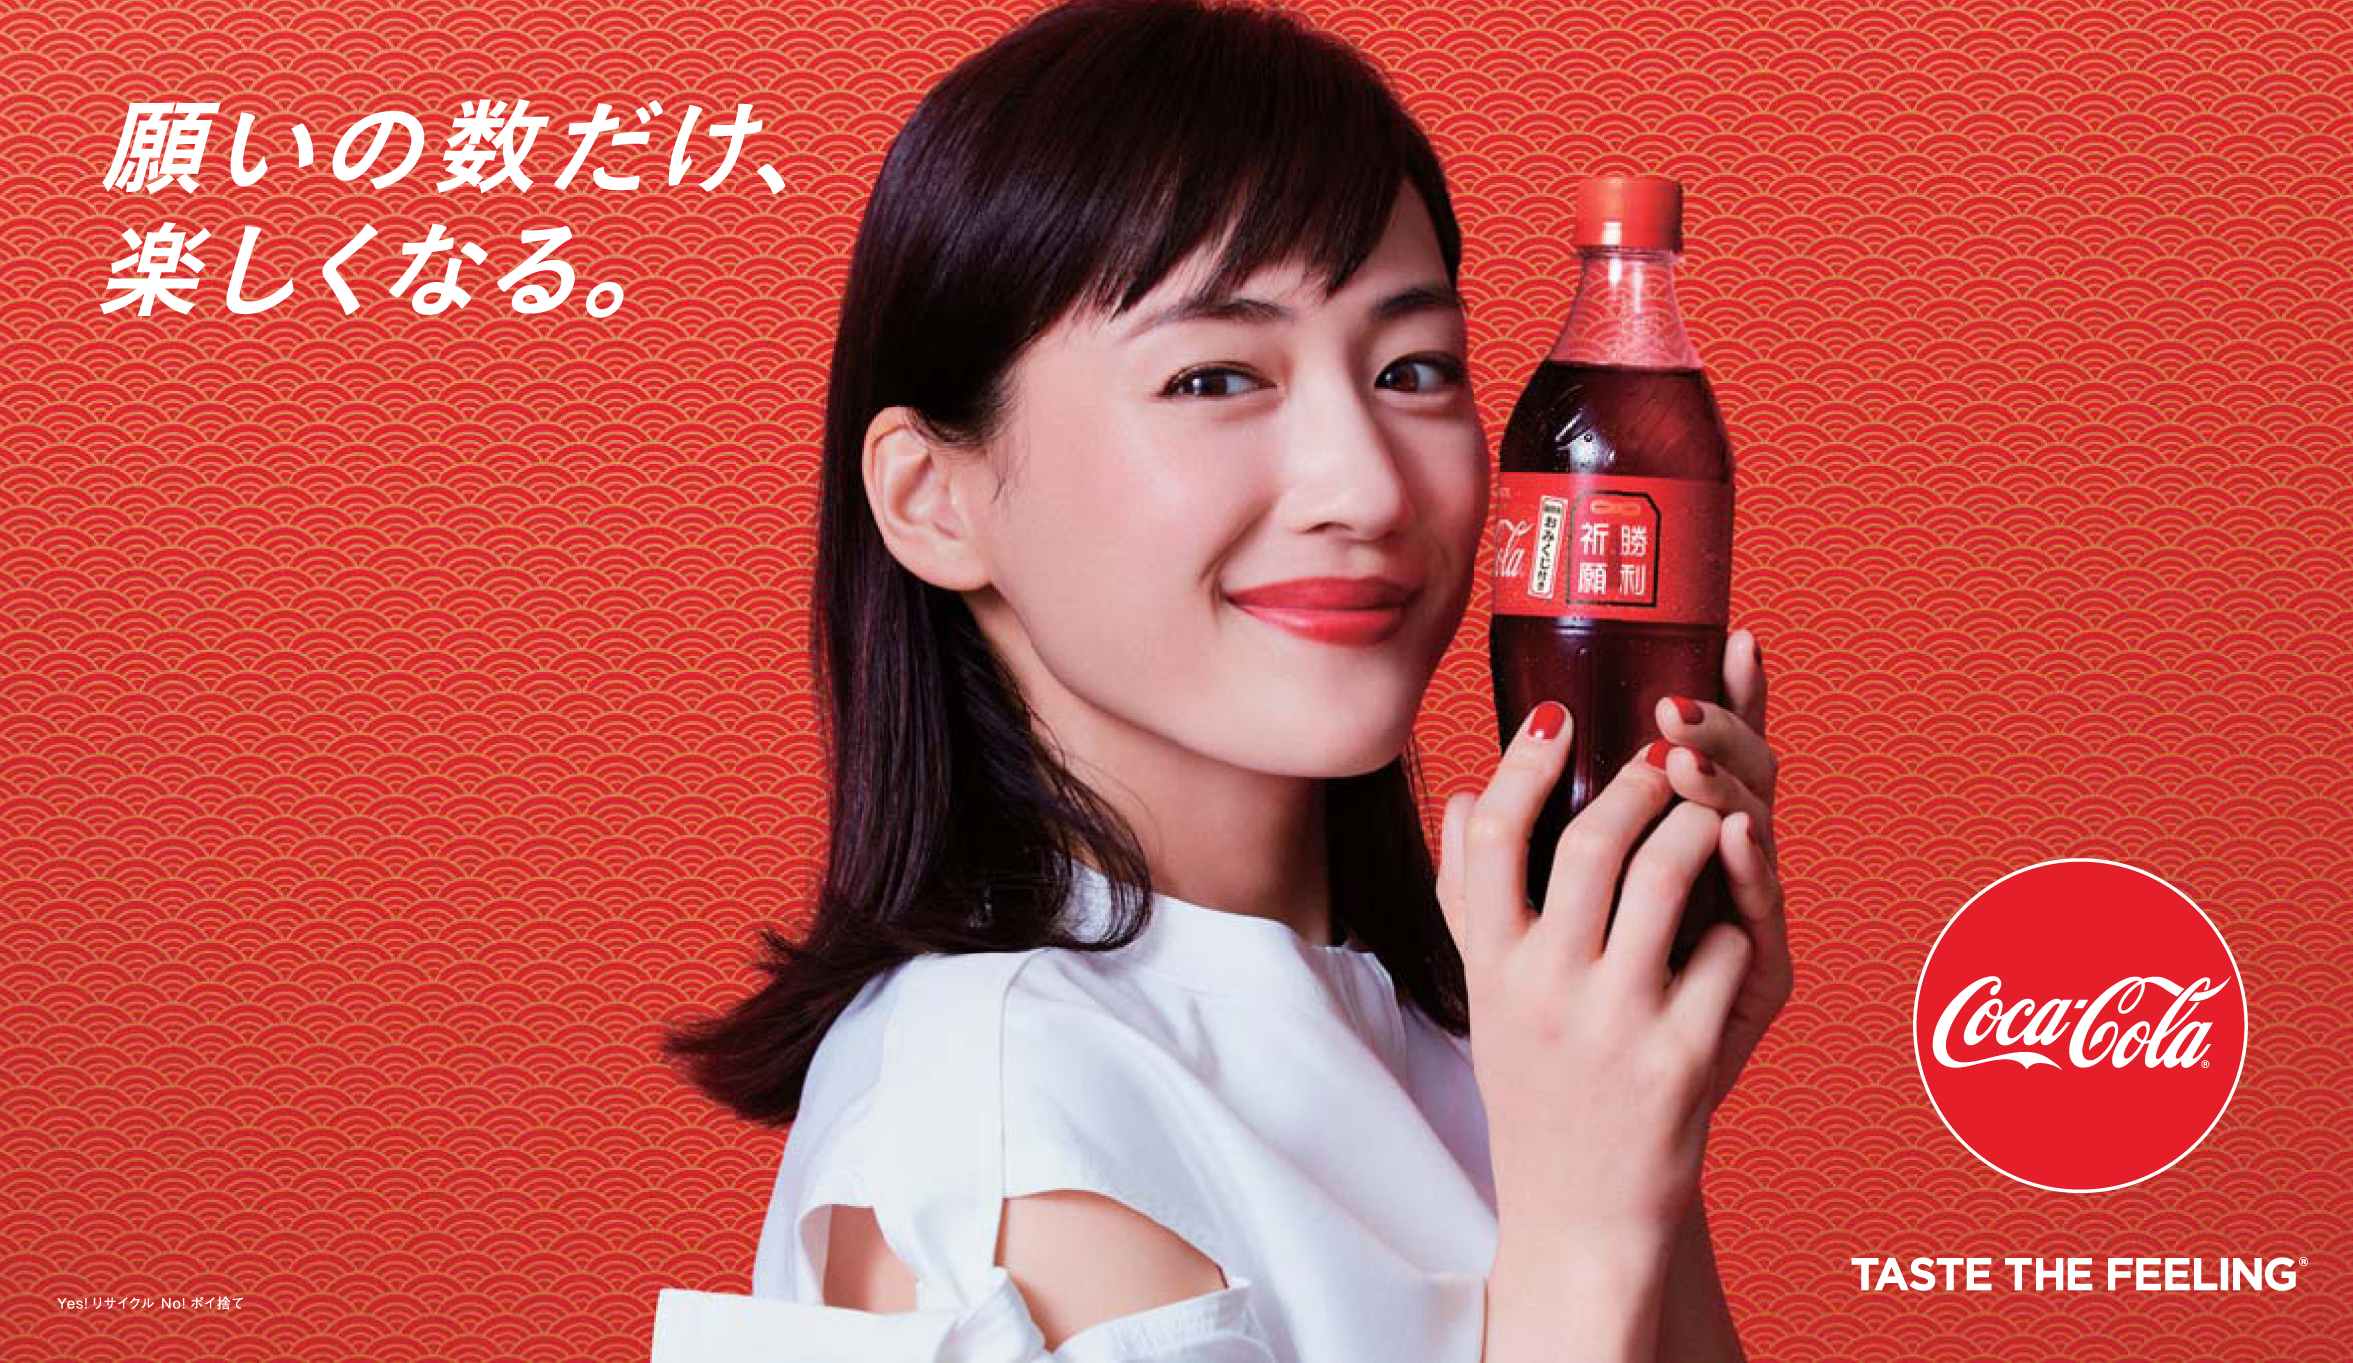 願いの数だけ 楽しくなる コカ コーラ 福ボトルキャンペーンスタート 新tvcmを1月7日 月 から全国放映開始 日本コカ コーラ 株式会社のプレスリリース